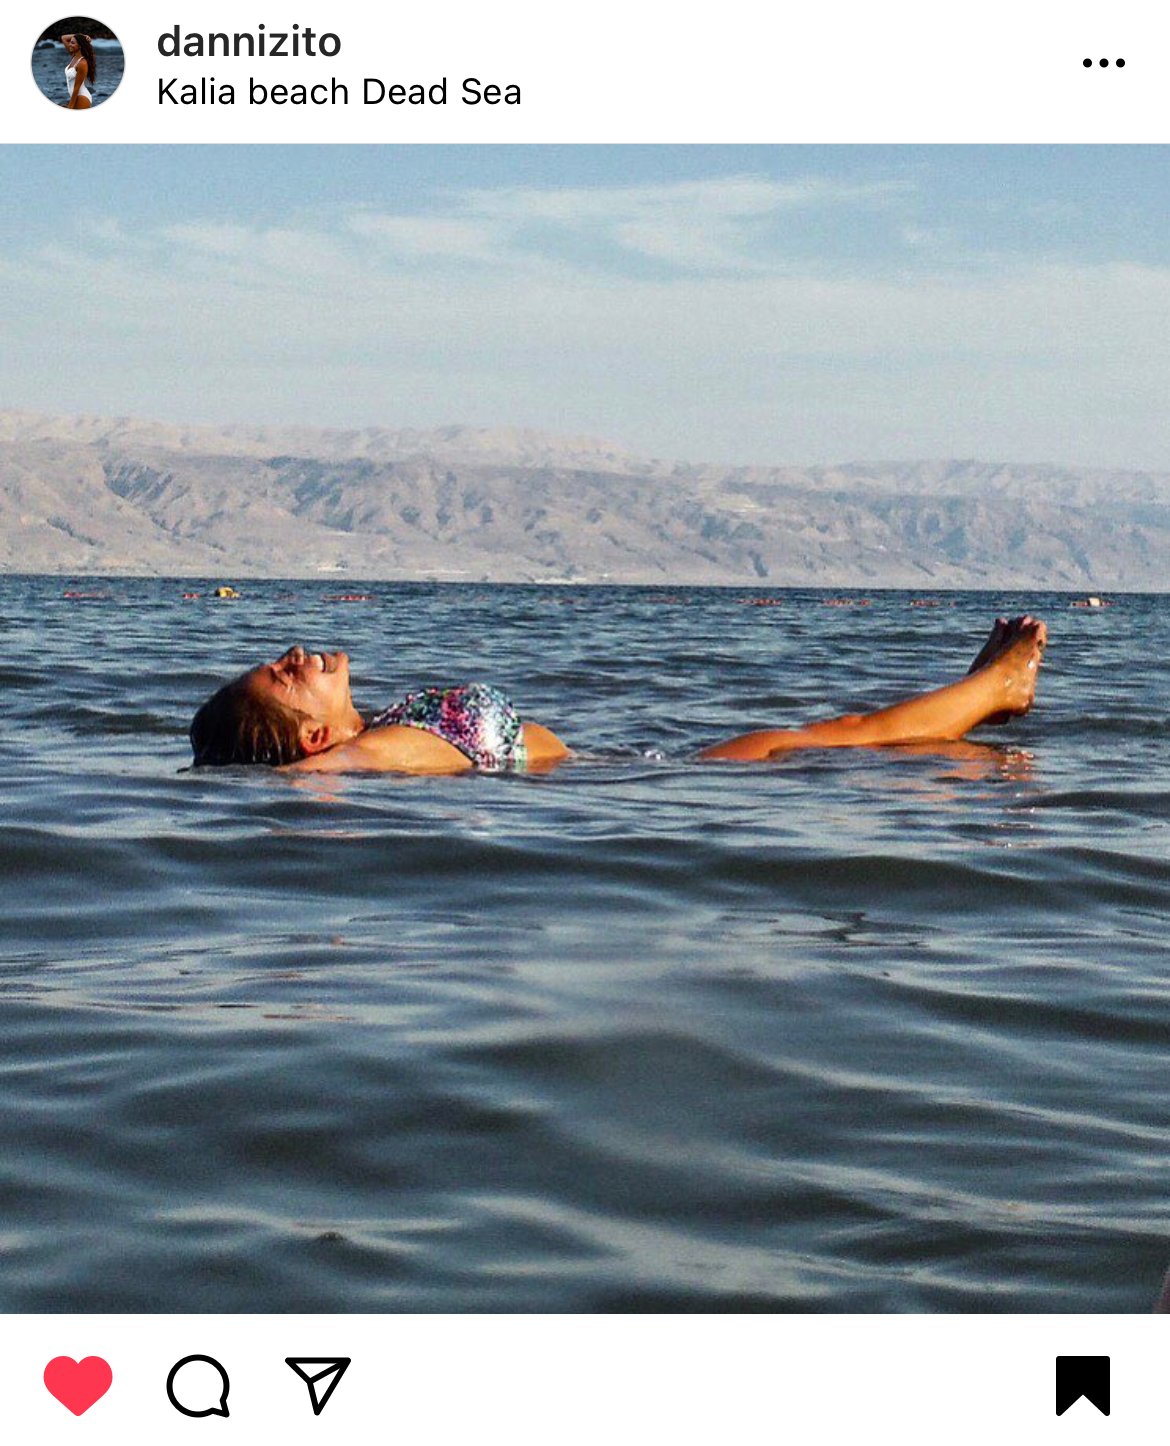 Dead Sea Lake- bucket list item